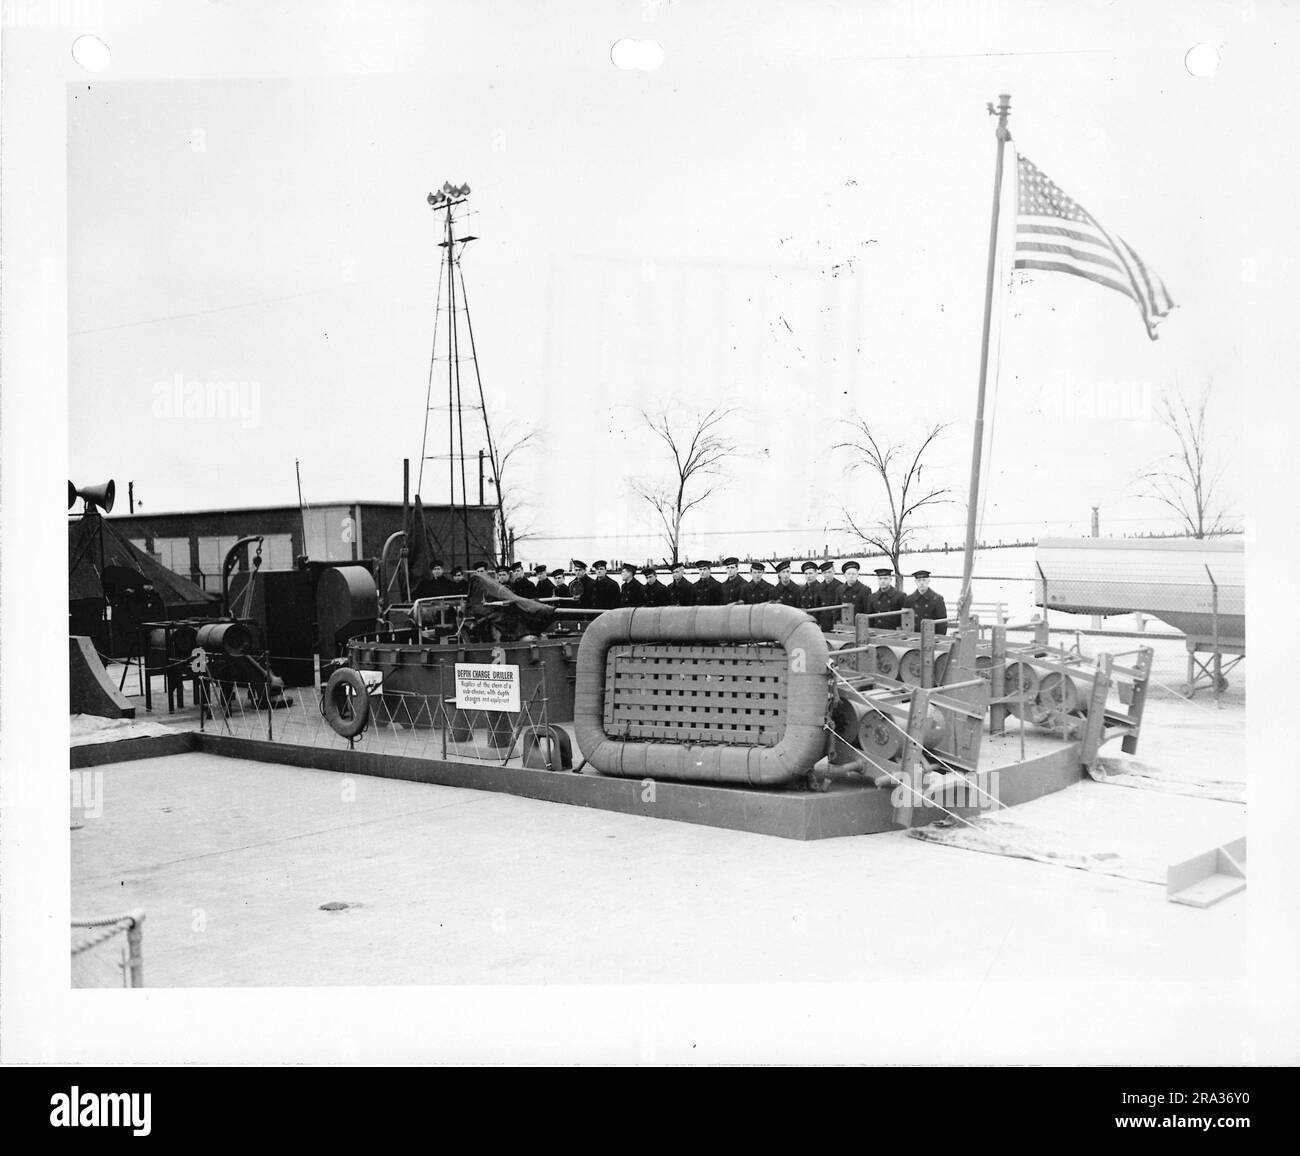 Photographie d'individus militaires debout derrière la réplique percutante de charge de profondeur - Un navire utilisé pour Chase sous-marins. Banque D'Images